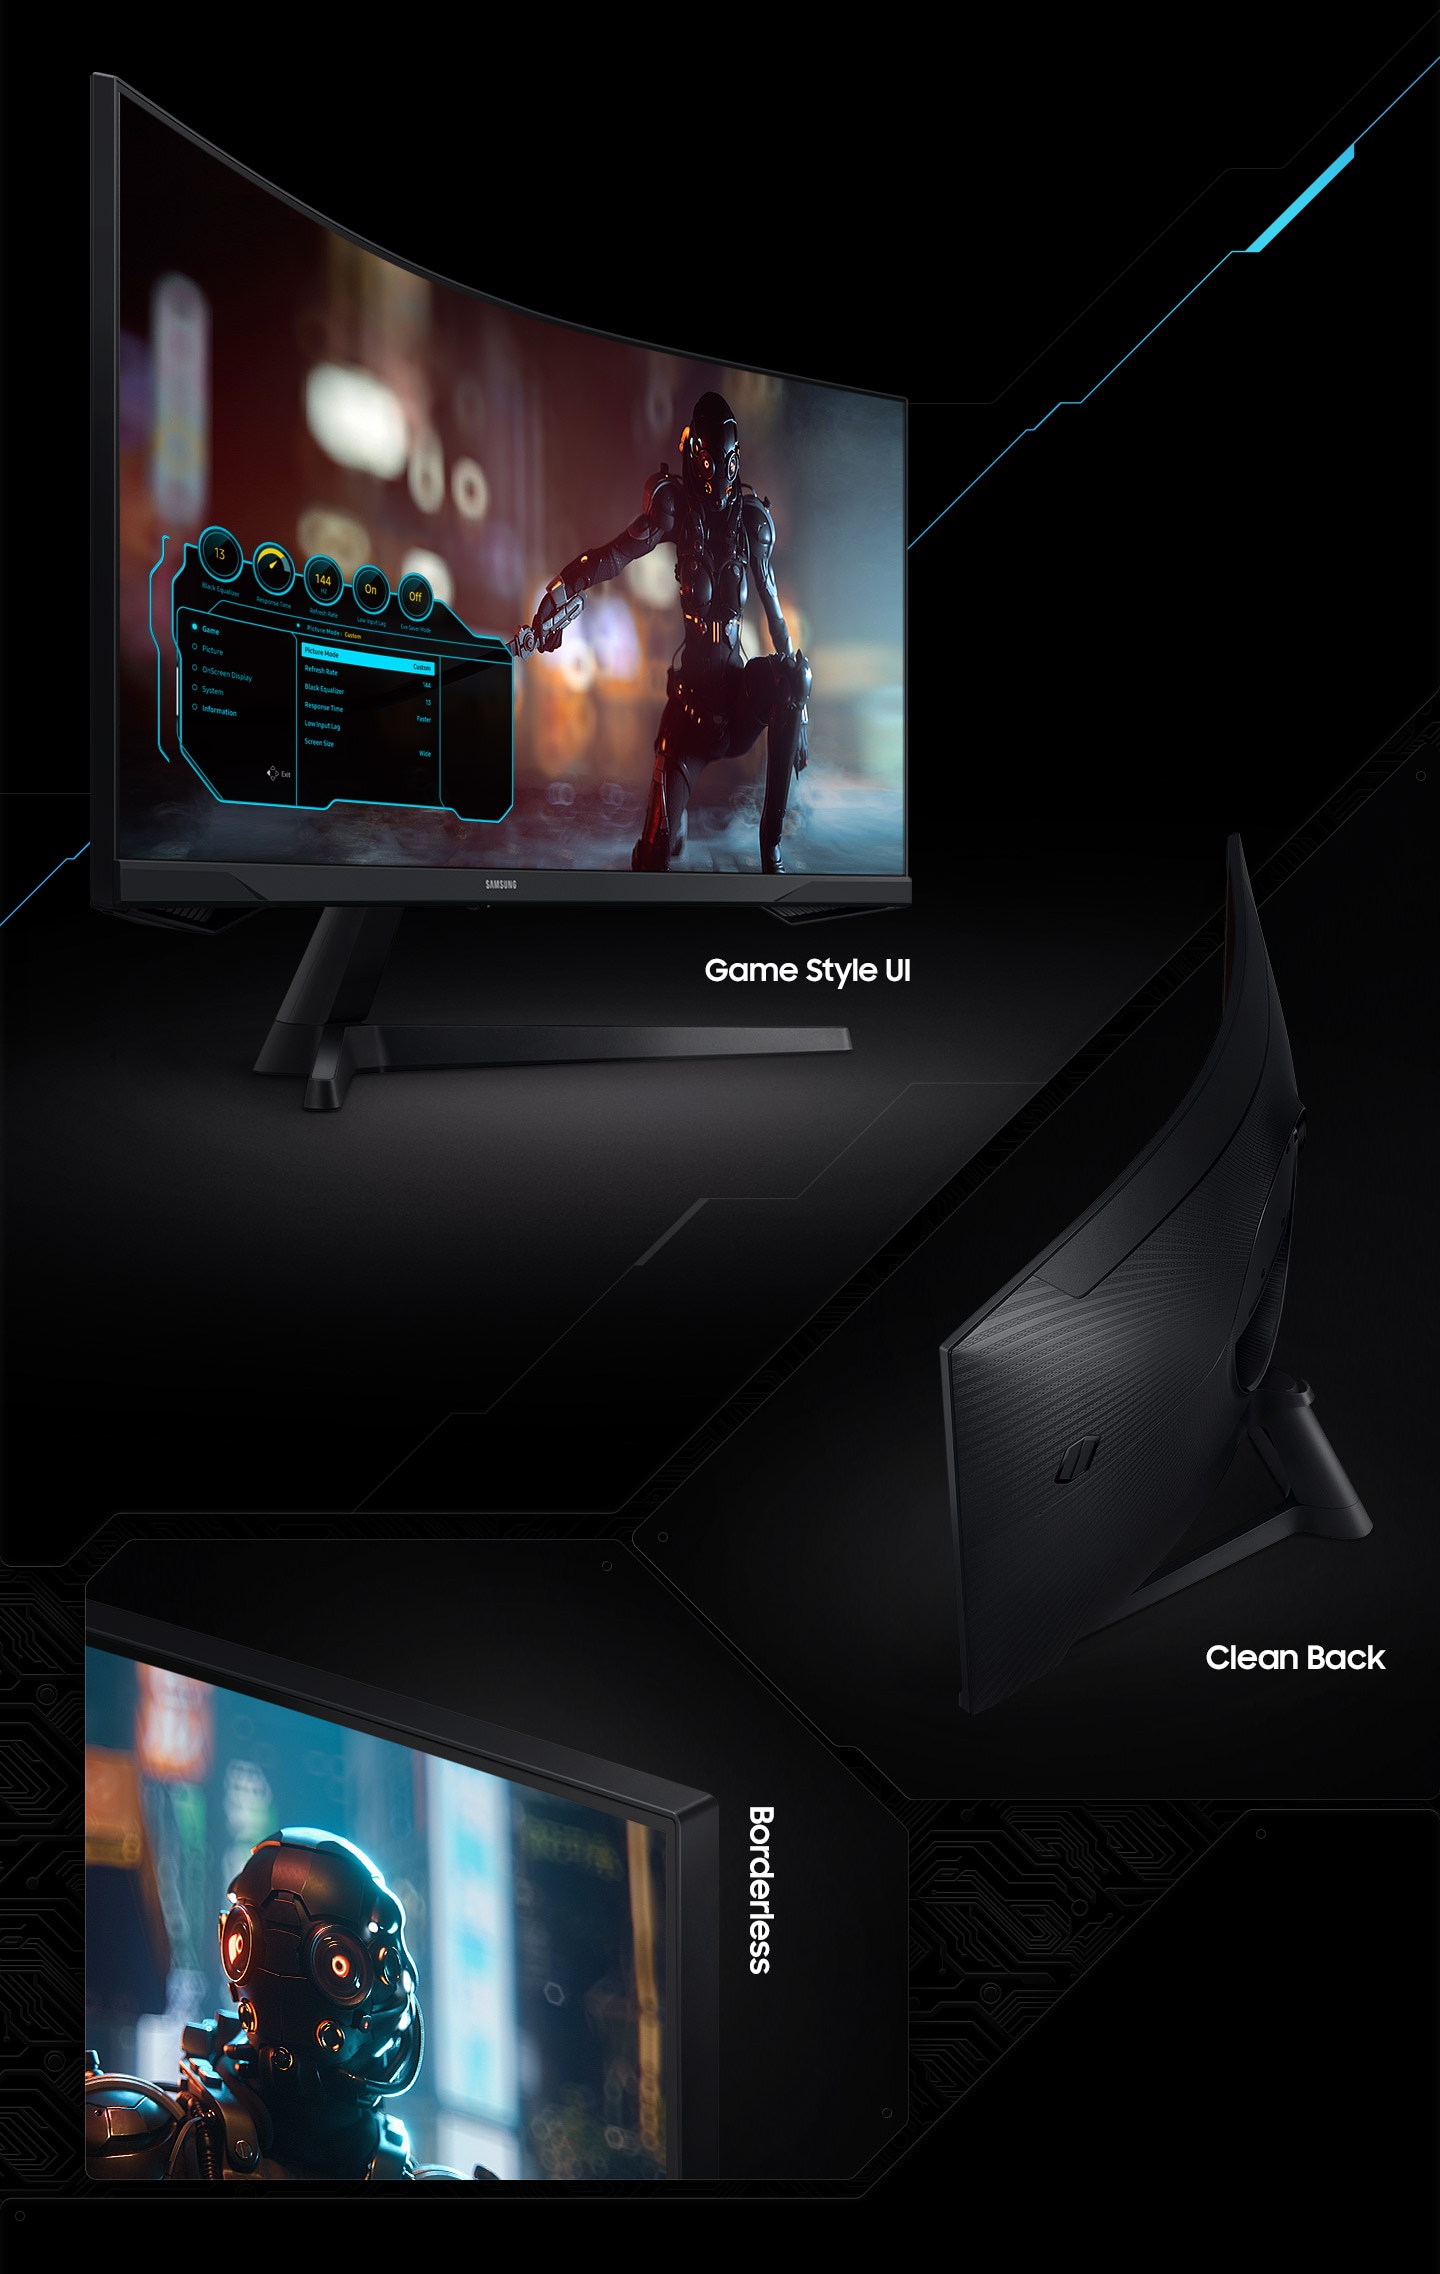 המסך נמצא ב-3 סוגי זוויות וכל אחת מציגה את ממשק המשתמש בסגנון המשחק, הגב הנקי והעיצוב חסר הגבולות.